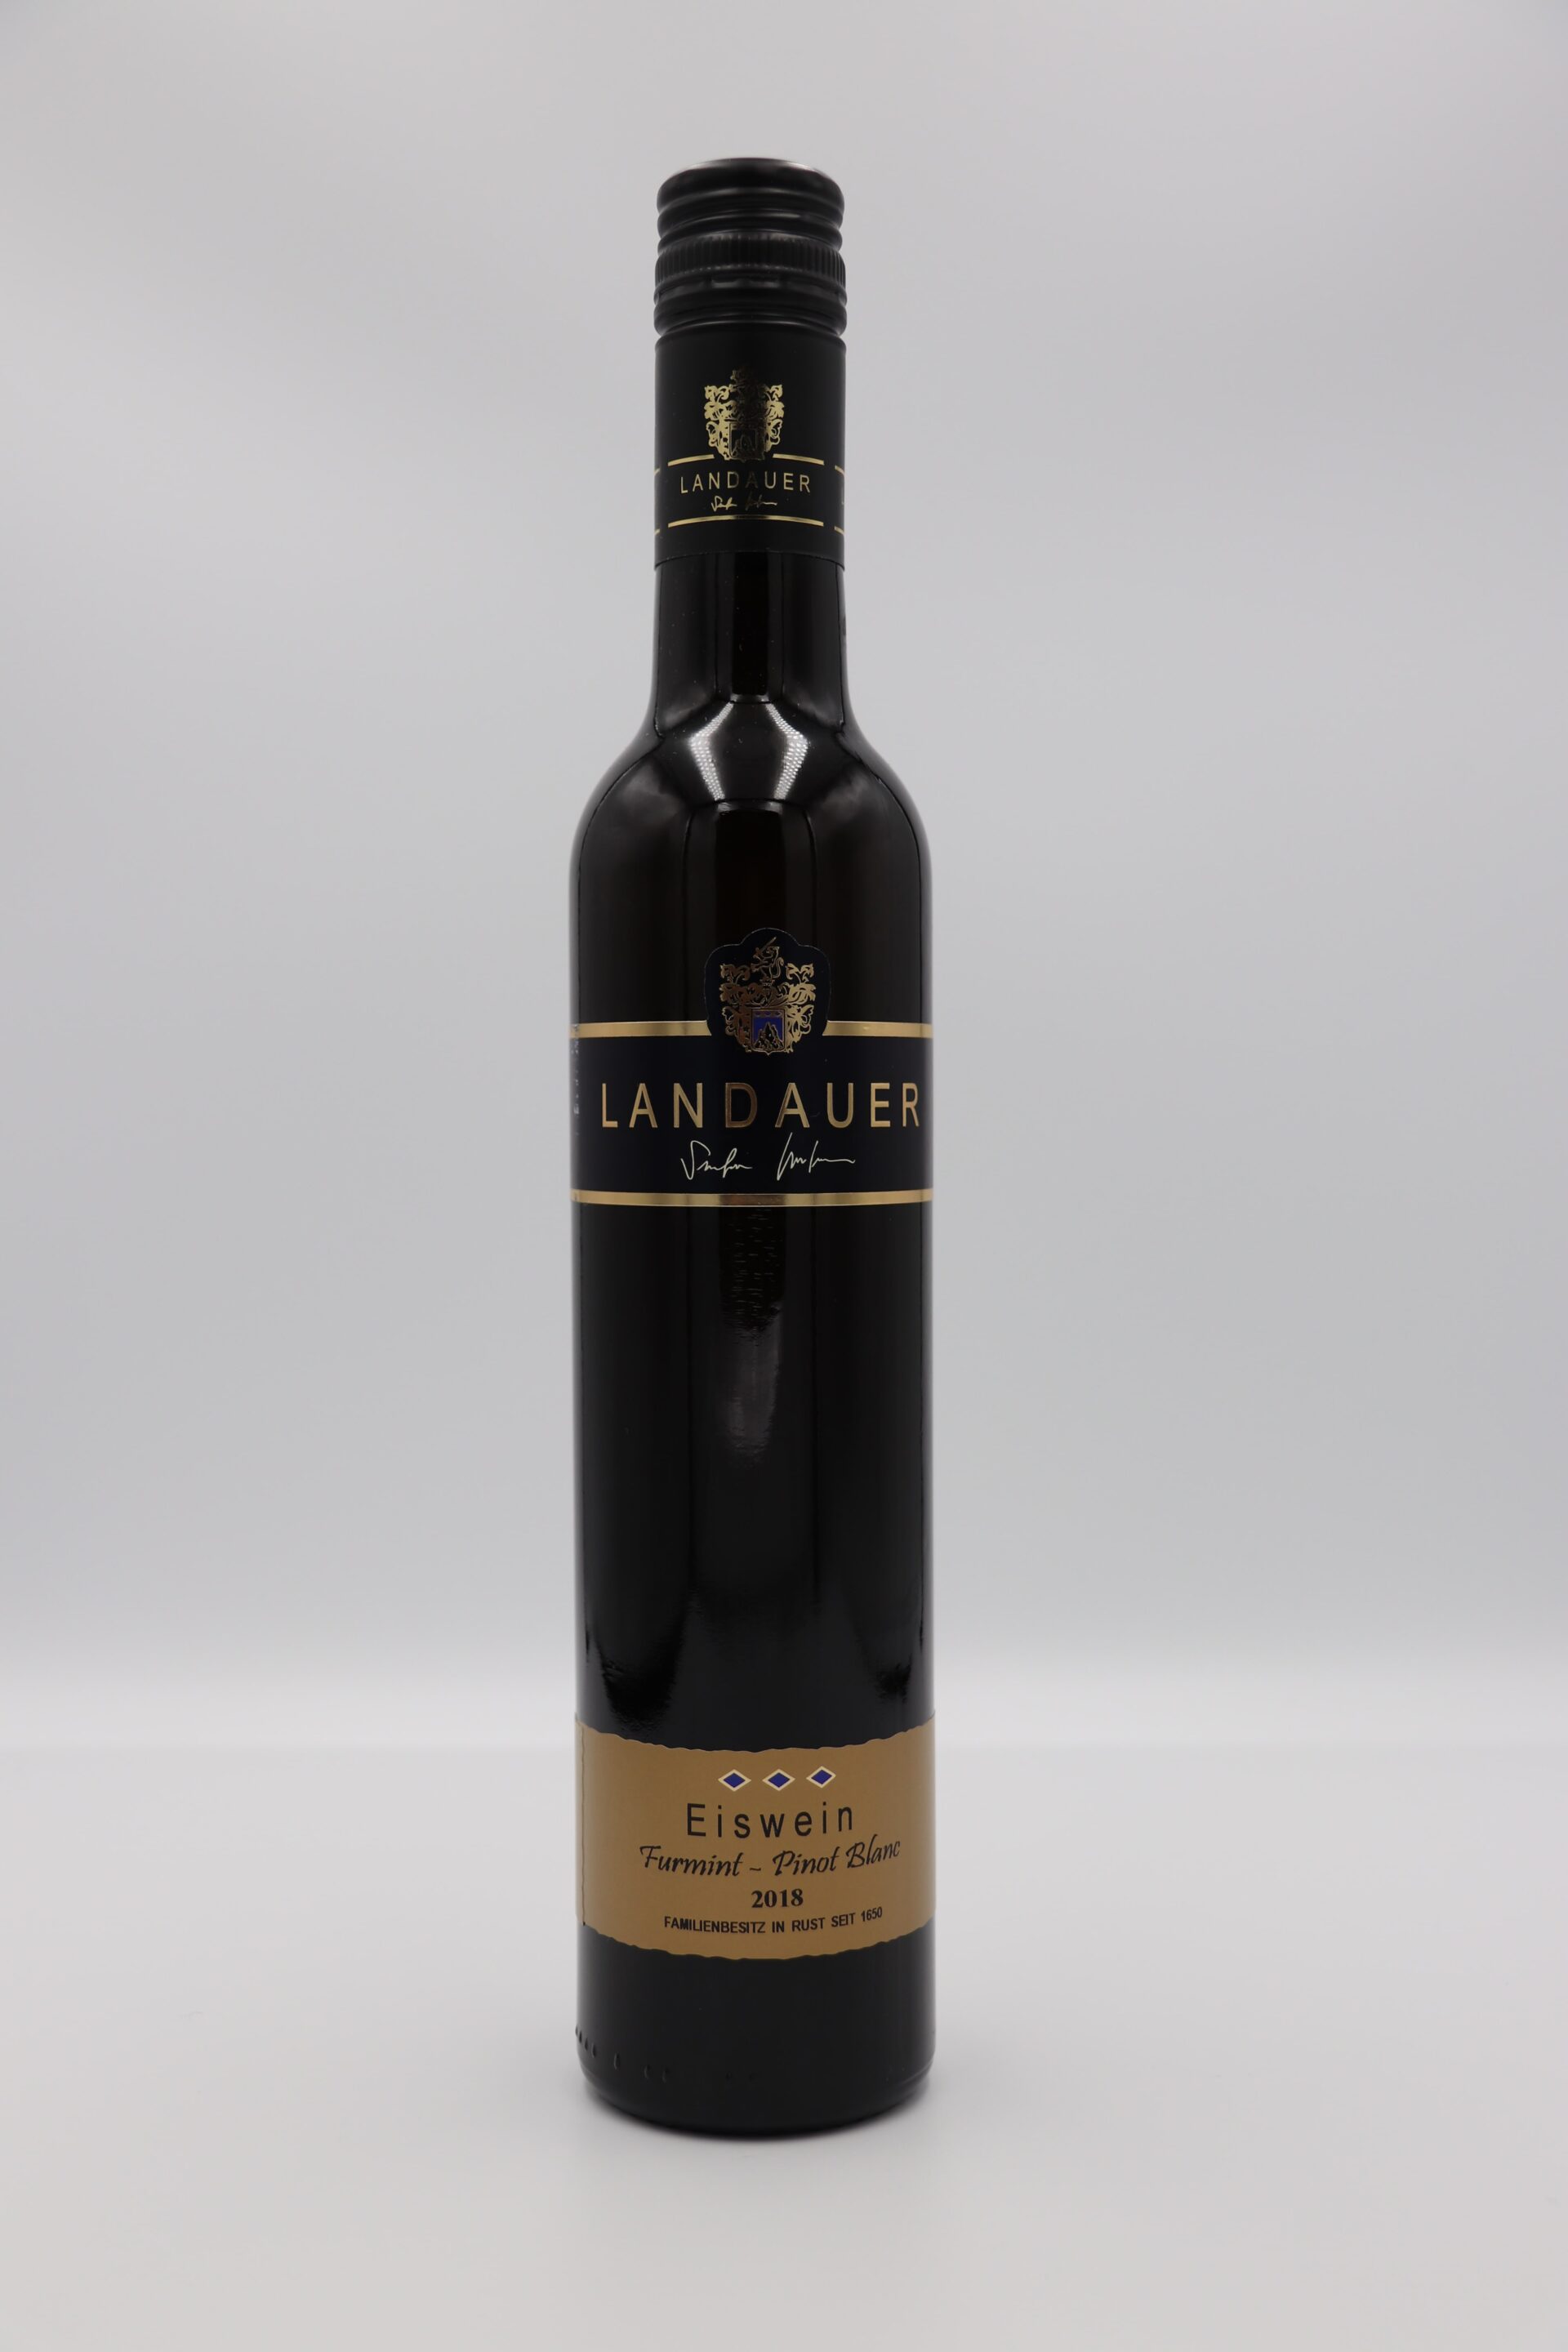 Landauer Eiswein “Furmint – Pinot Blanc” 2018